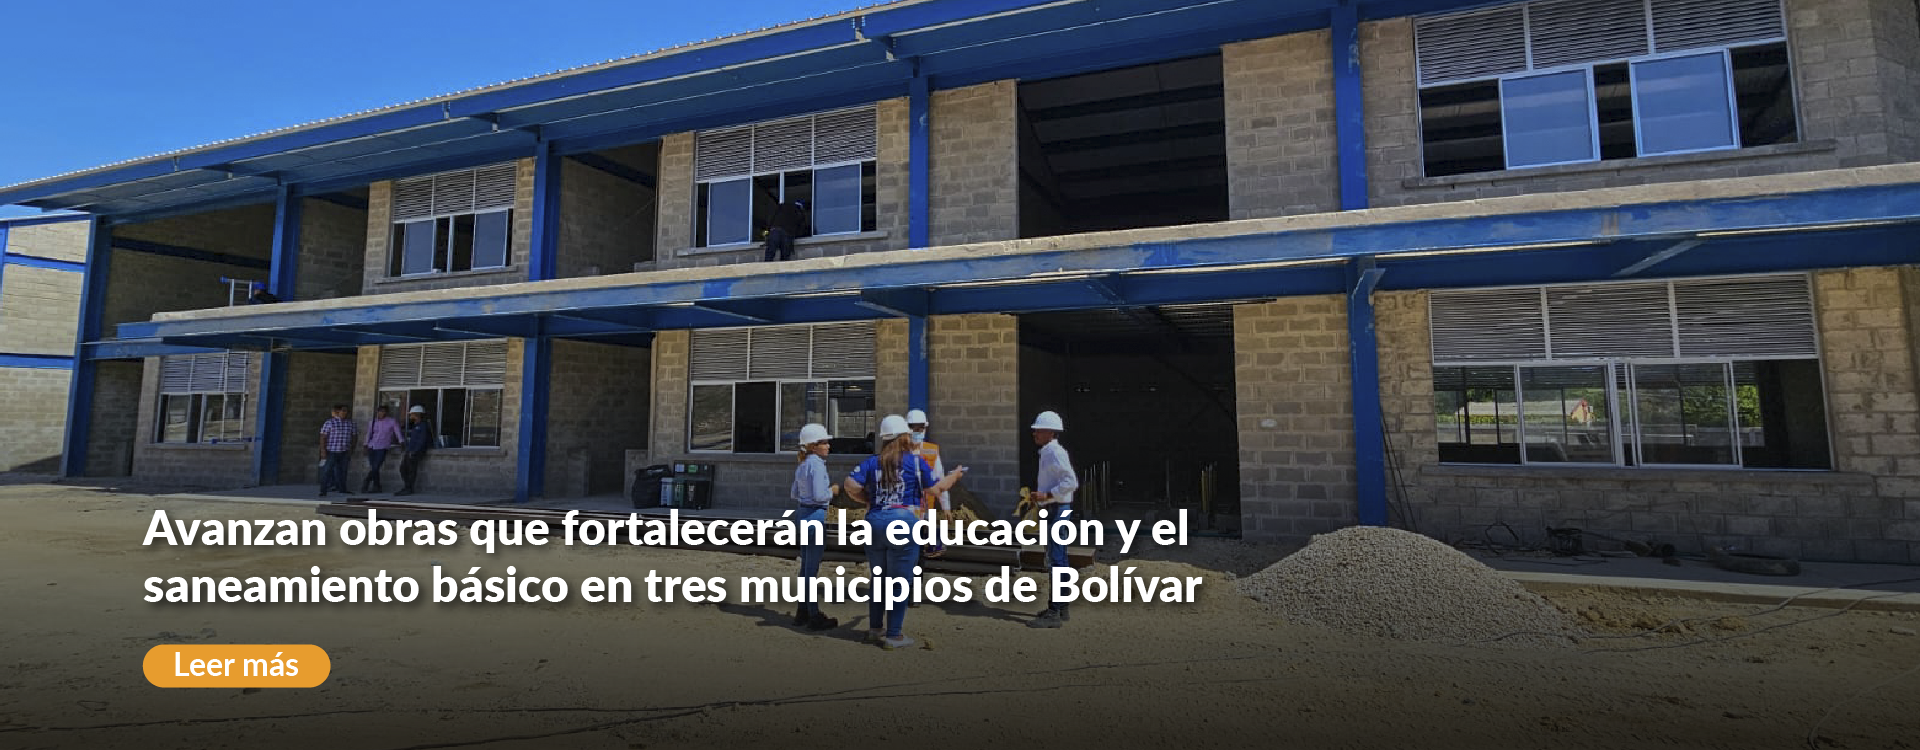 Avanzan obras que fortalecerán la educación y el saneamiento básico en tres municipios de Bolívar